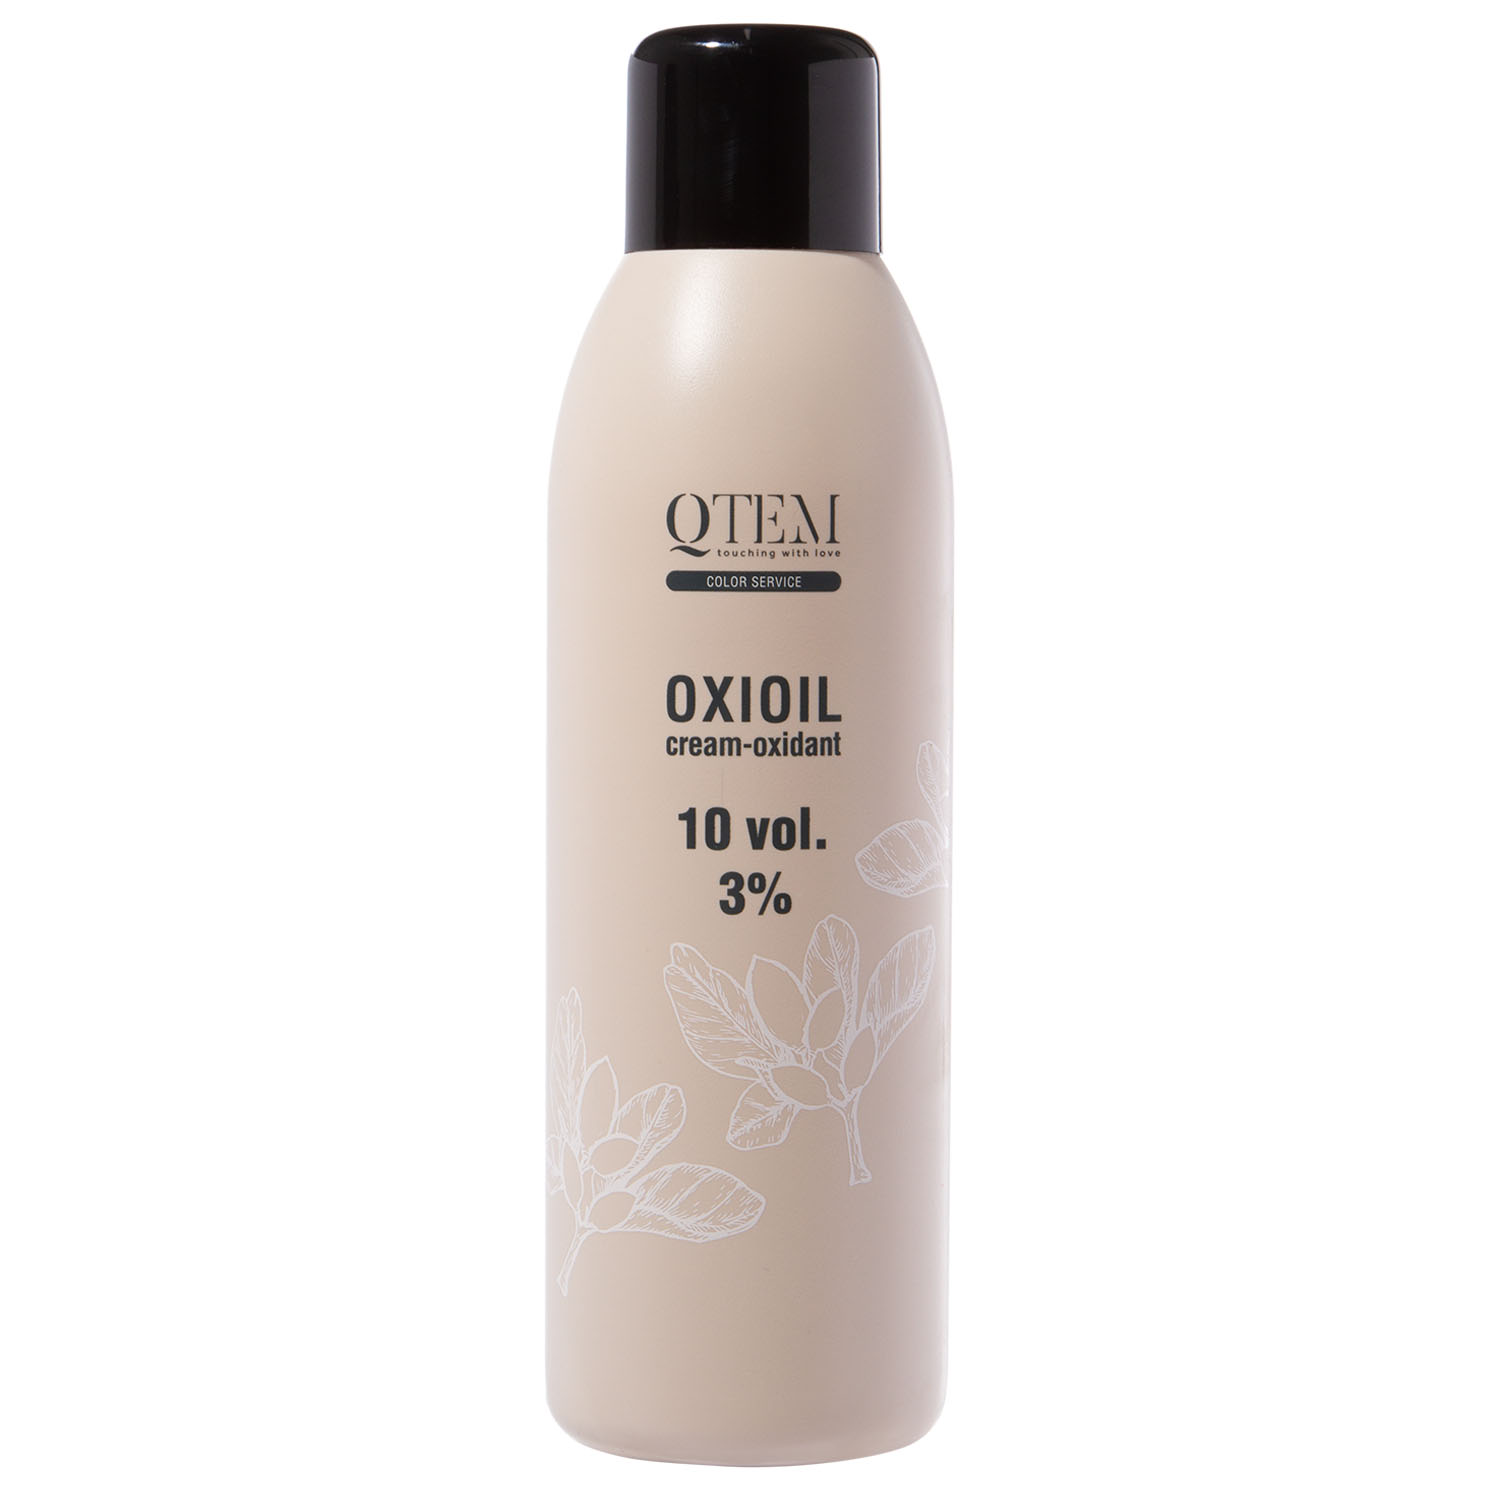 Qtem Универсальный крем-оксидант Oxioil 3% (10 Vol.), 1000 м